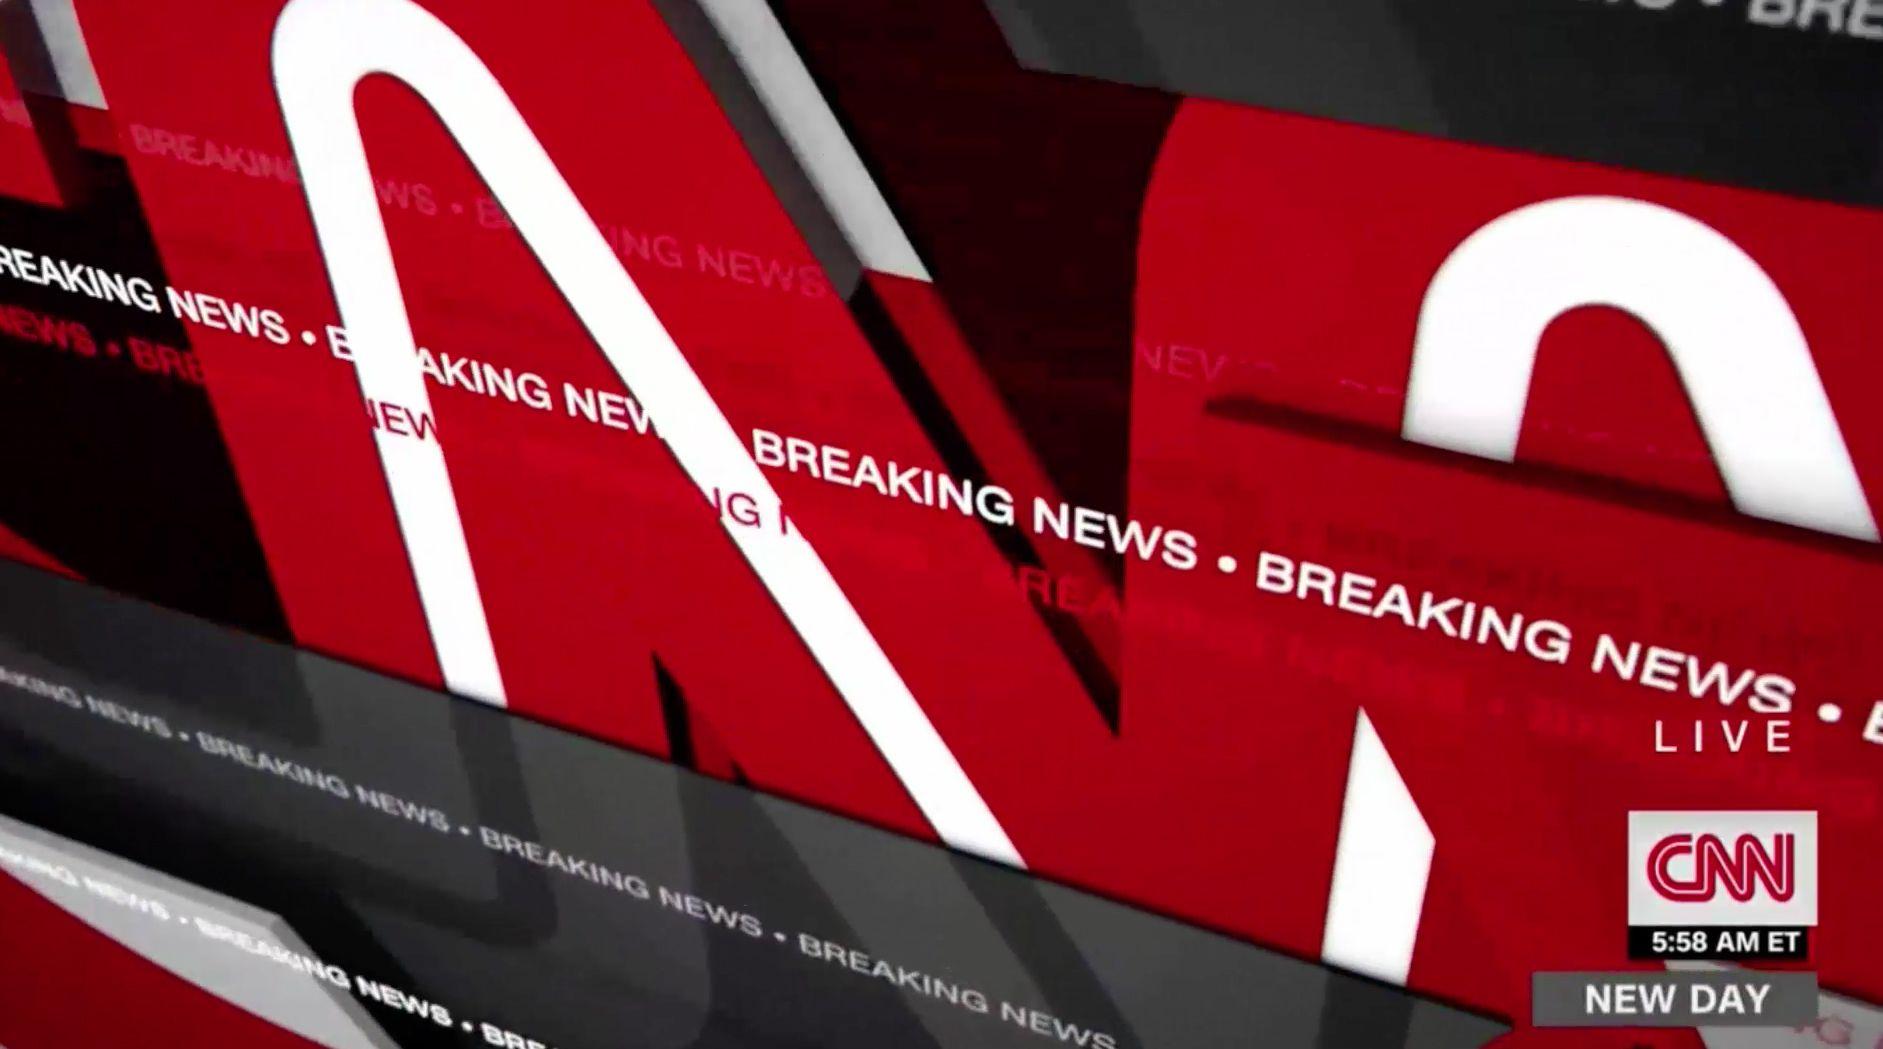 CNN News Logo - CNN gets new breaking news look